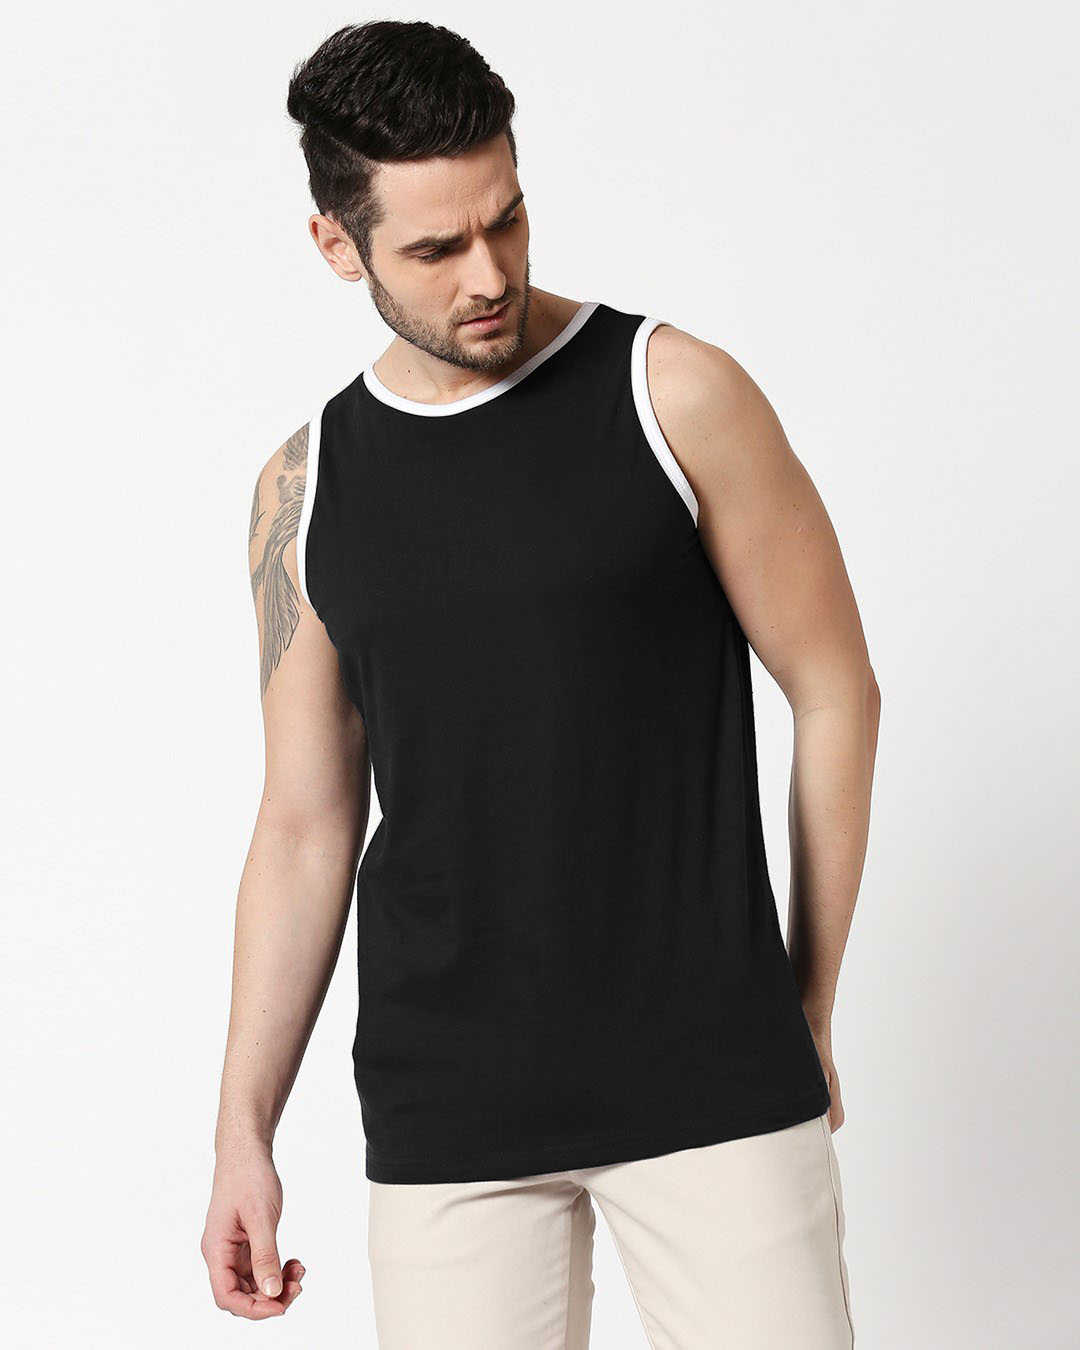 Buy Men's Black Contrast Binding Vest for Men Online at Bewakoof